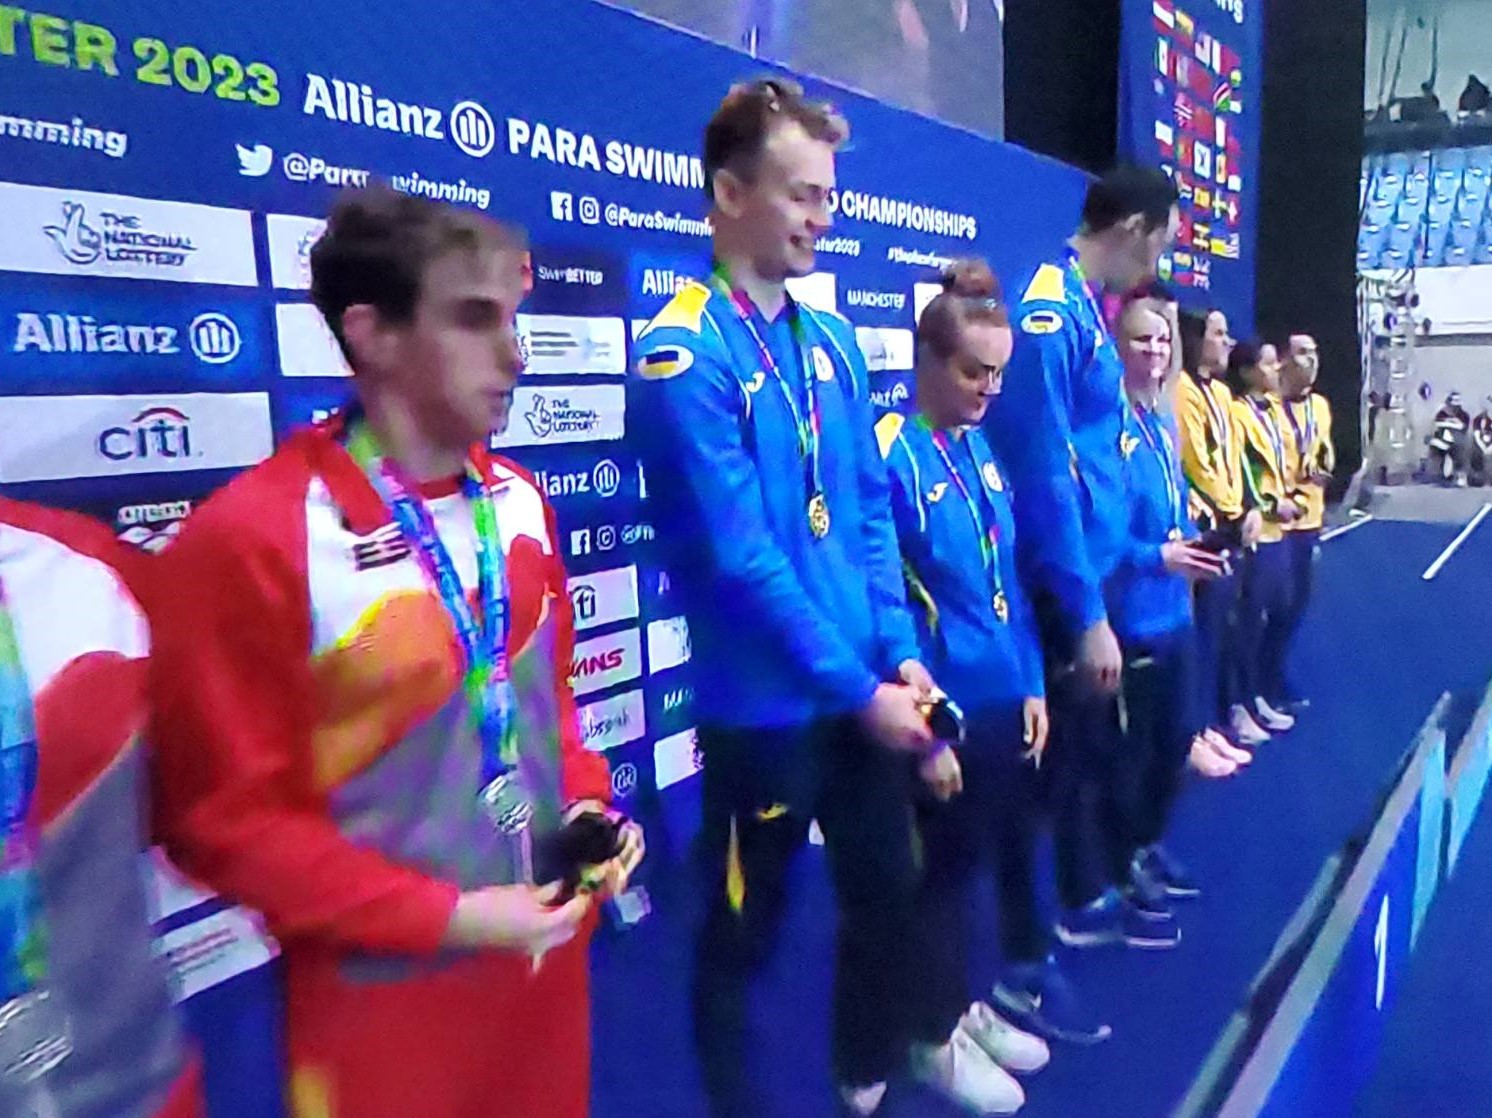 Спортсмен Олексій Вірченко виборов золоту нагороду Чемпіонату світу з паралімпійського плавання, ставши найкращим у змішаній естафеті